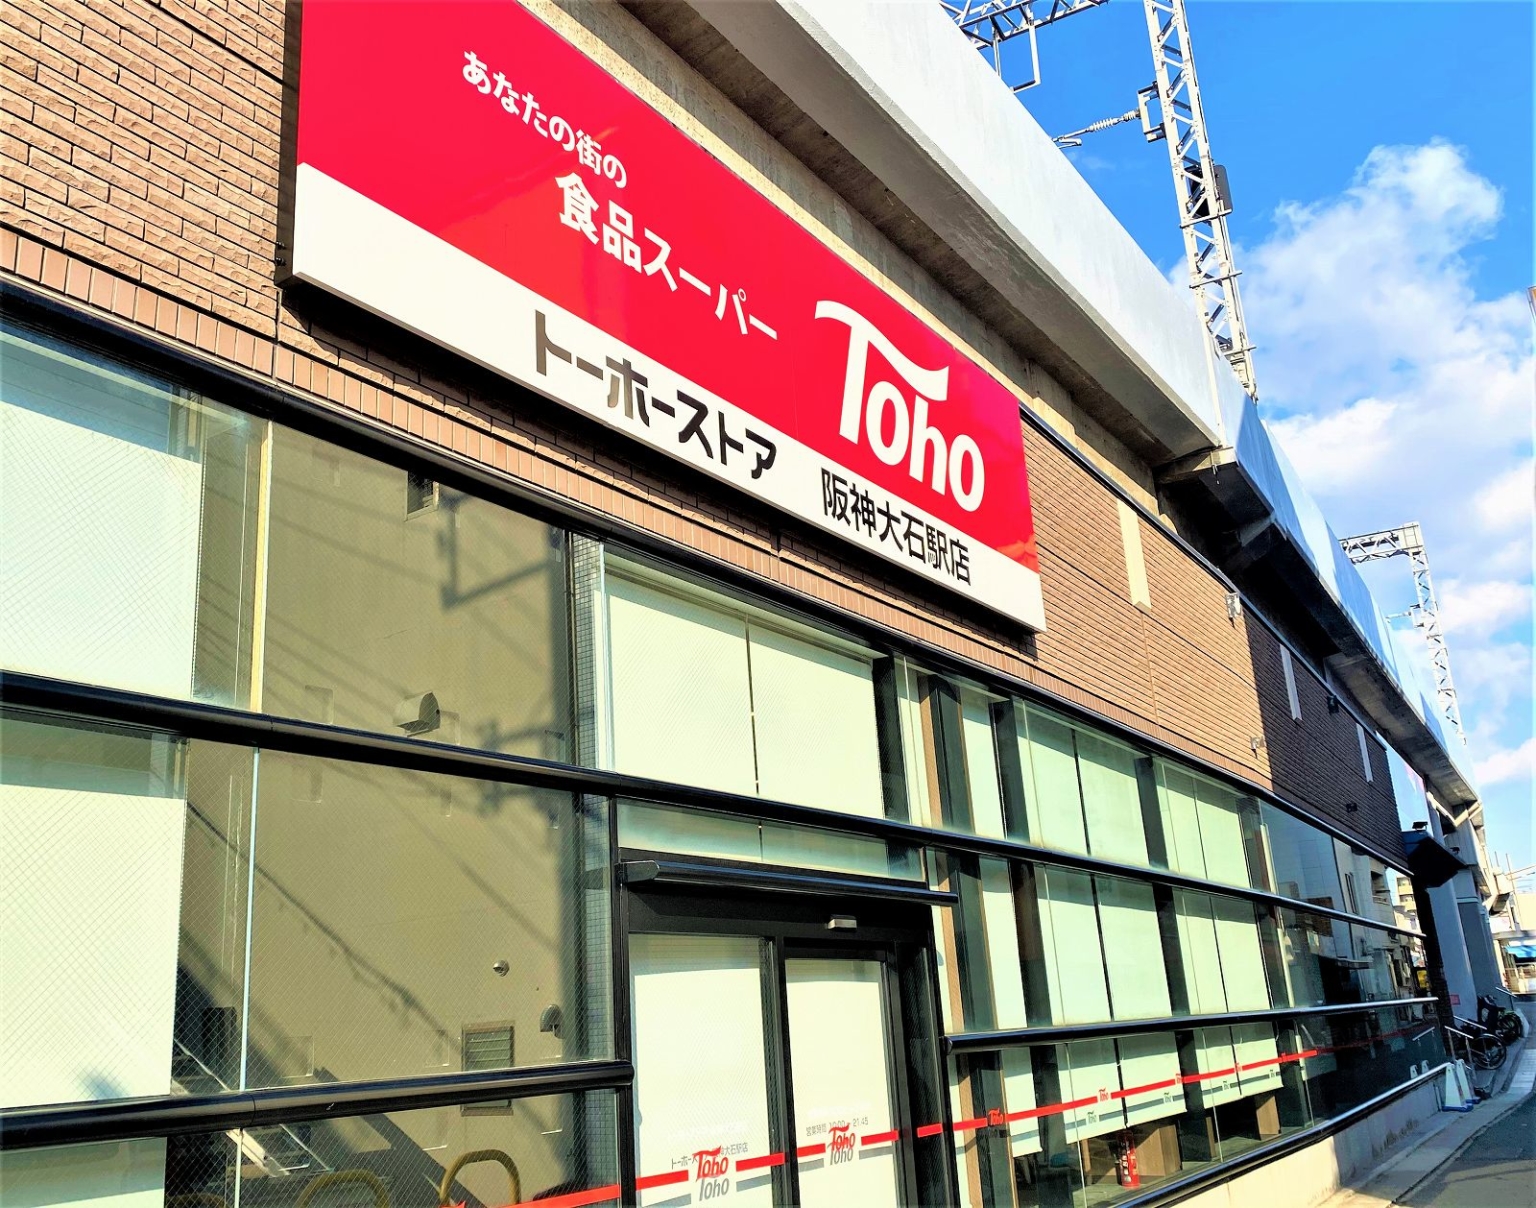 「トーホーストア 阪神大石駅店」さんが2021年1月19日（火）朝10時にオープン予定！キーワードは「健康」「時短」！ #新規オープン #新店